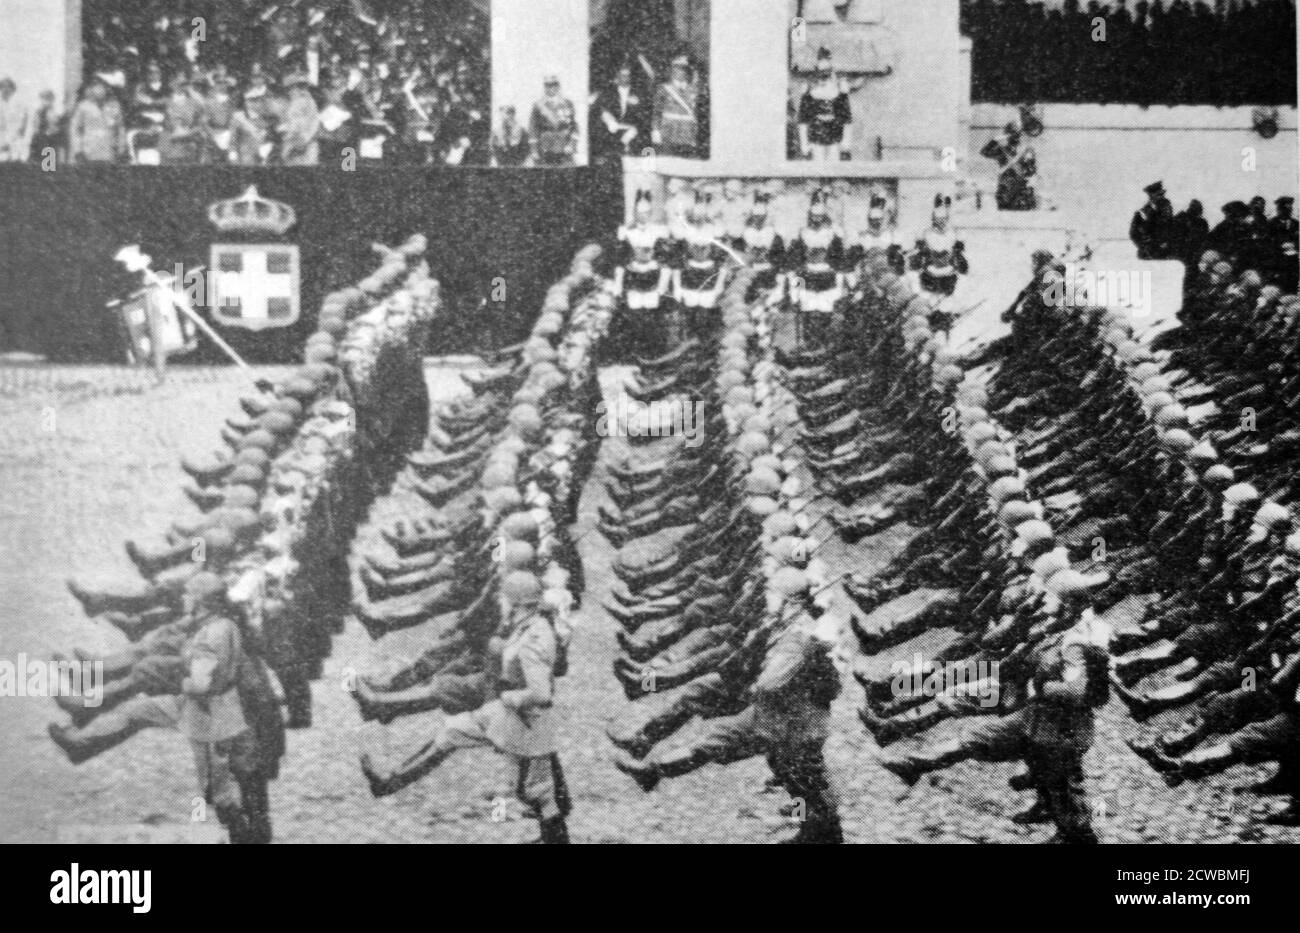 Schwarz-Weiß-Fotografie des italienischen Schrittes, ähnlich dem deutschen Gänseschritt. Die Armee marschiert in Rom. Stockfoto